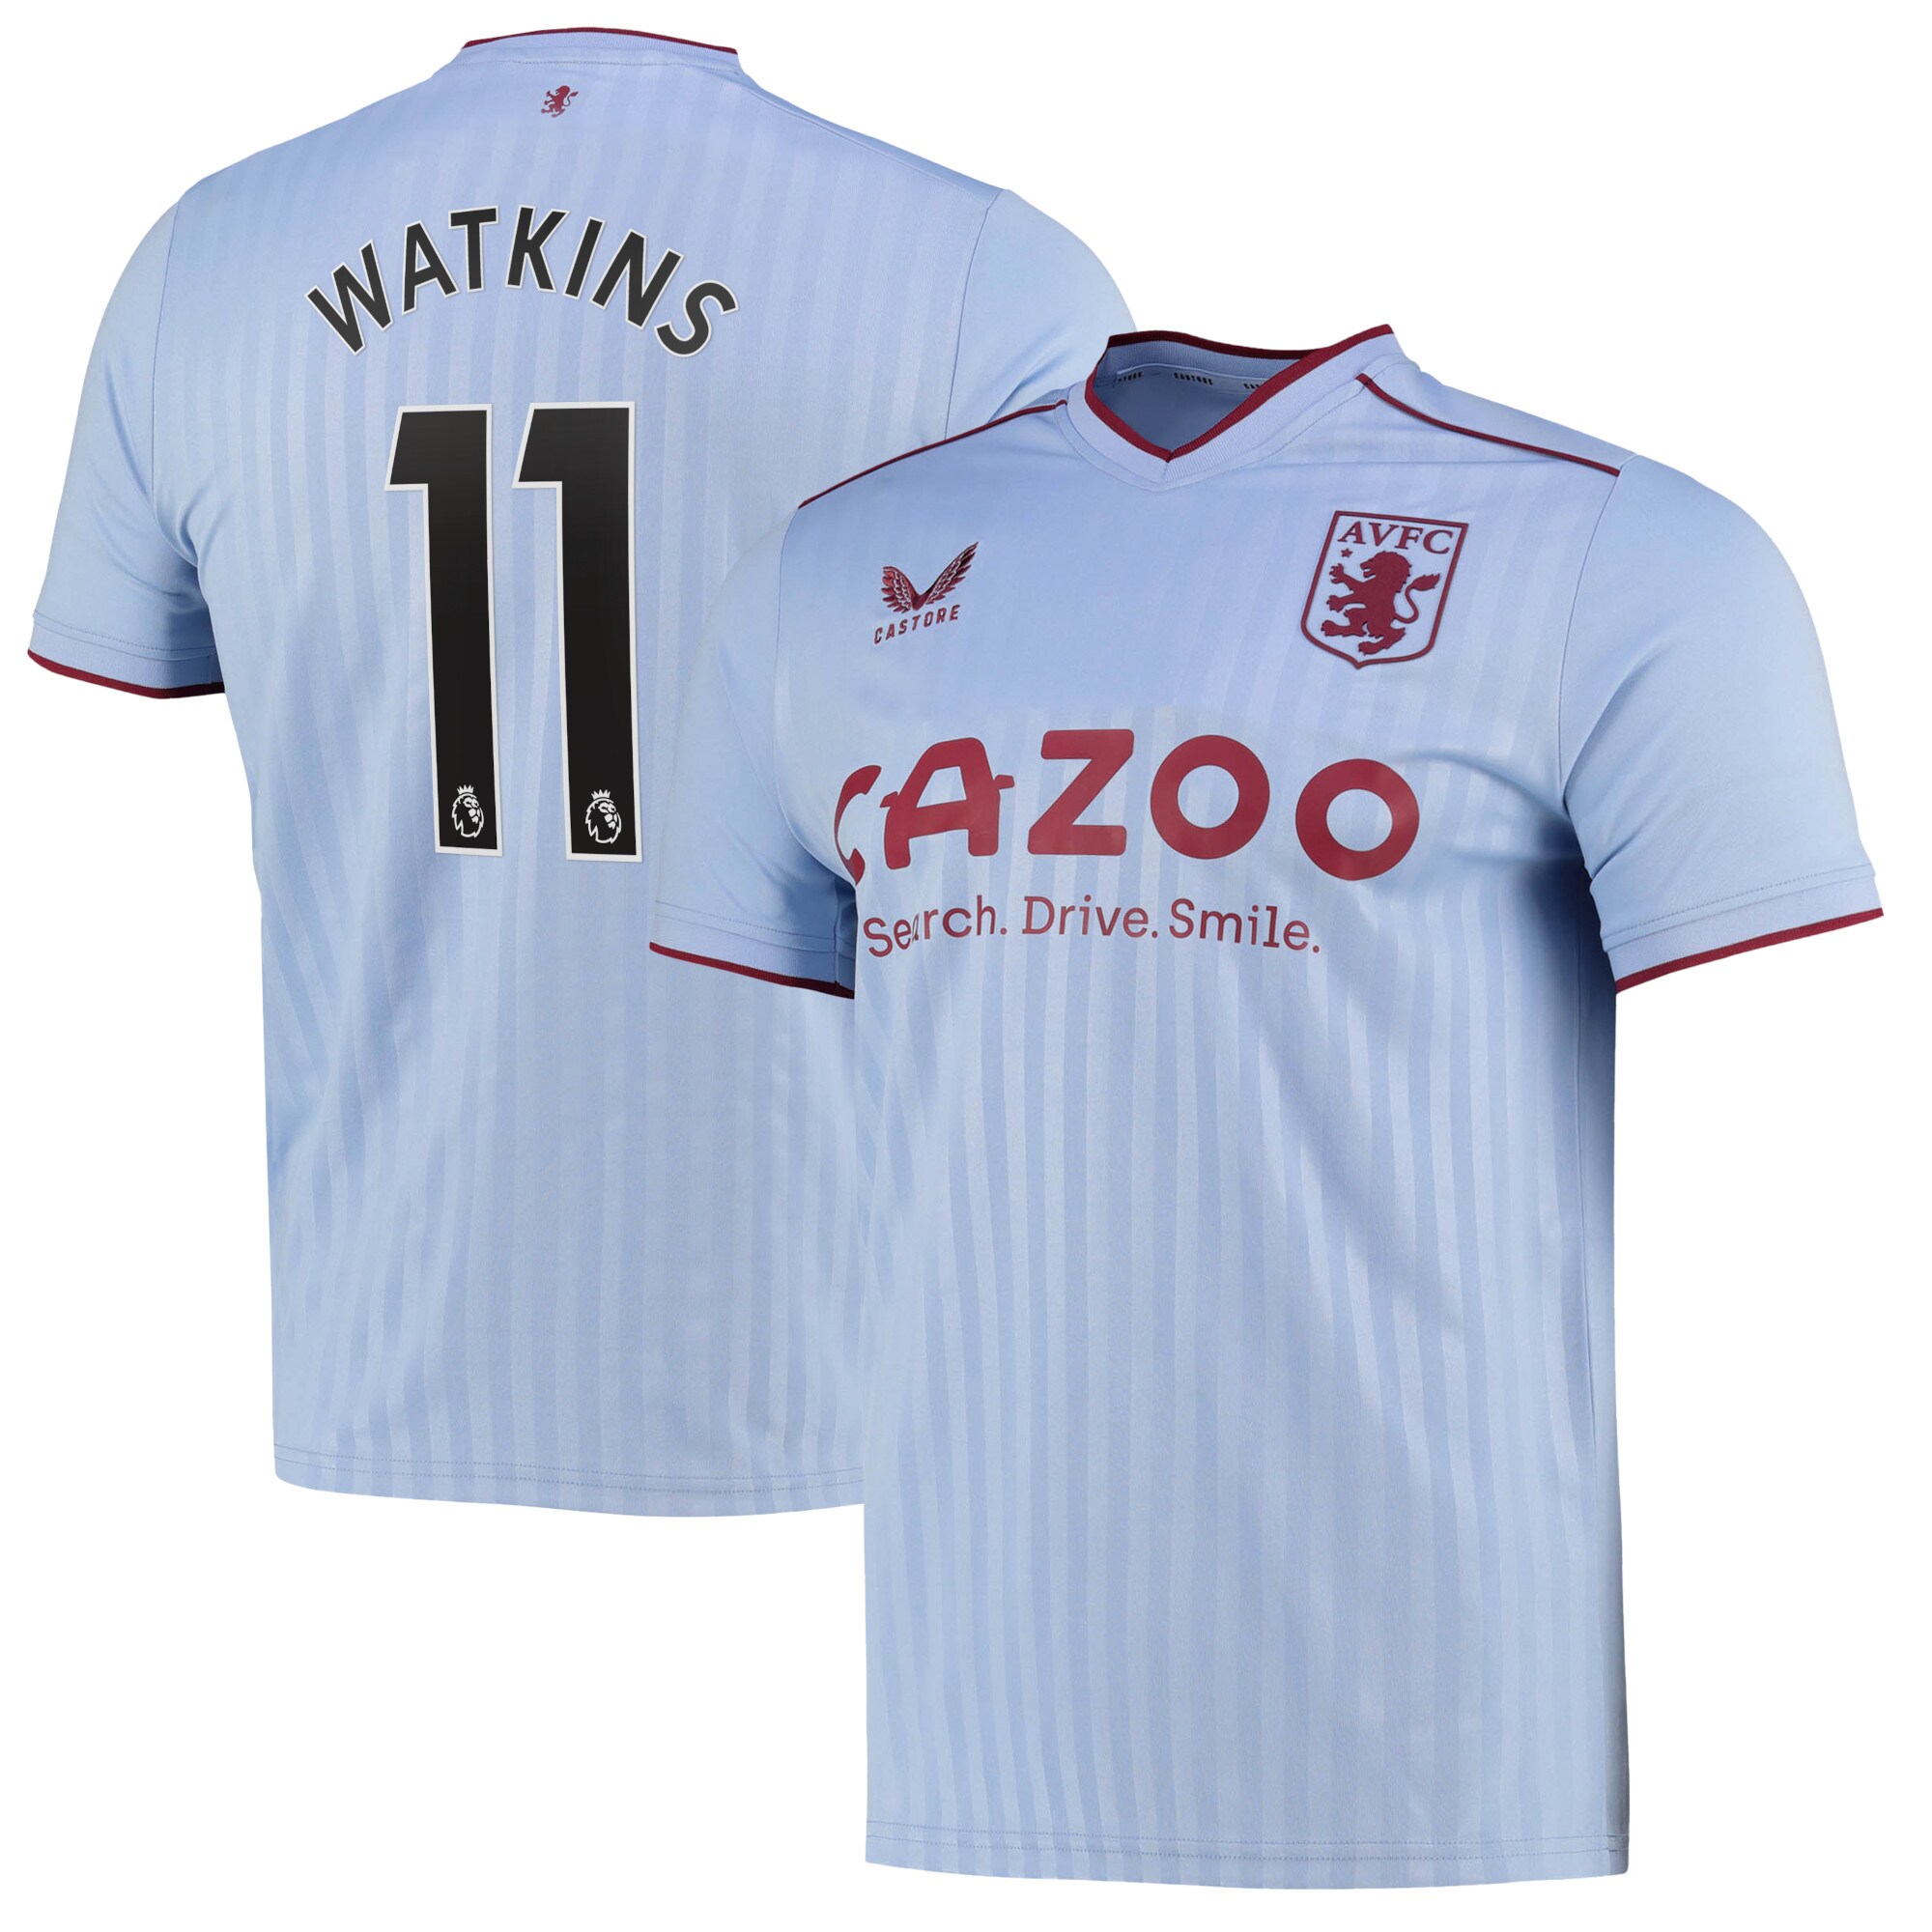 Aston Villa Away Shirt 2022-23 with Watkins 11 printing